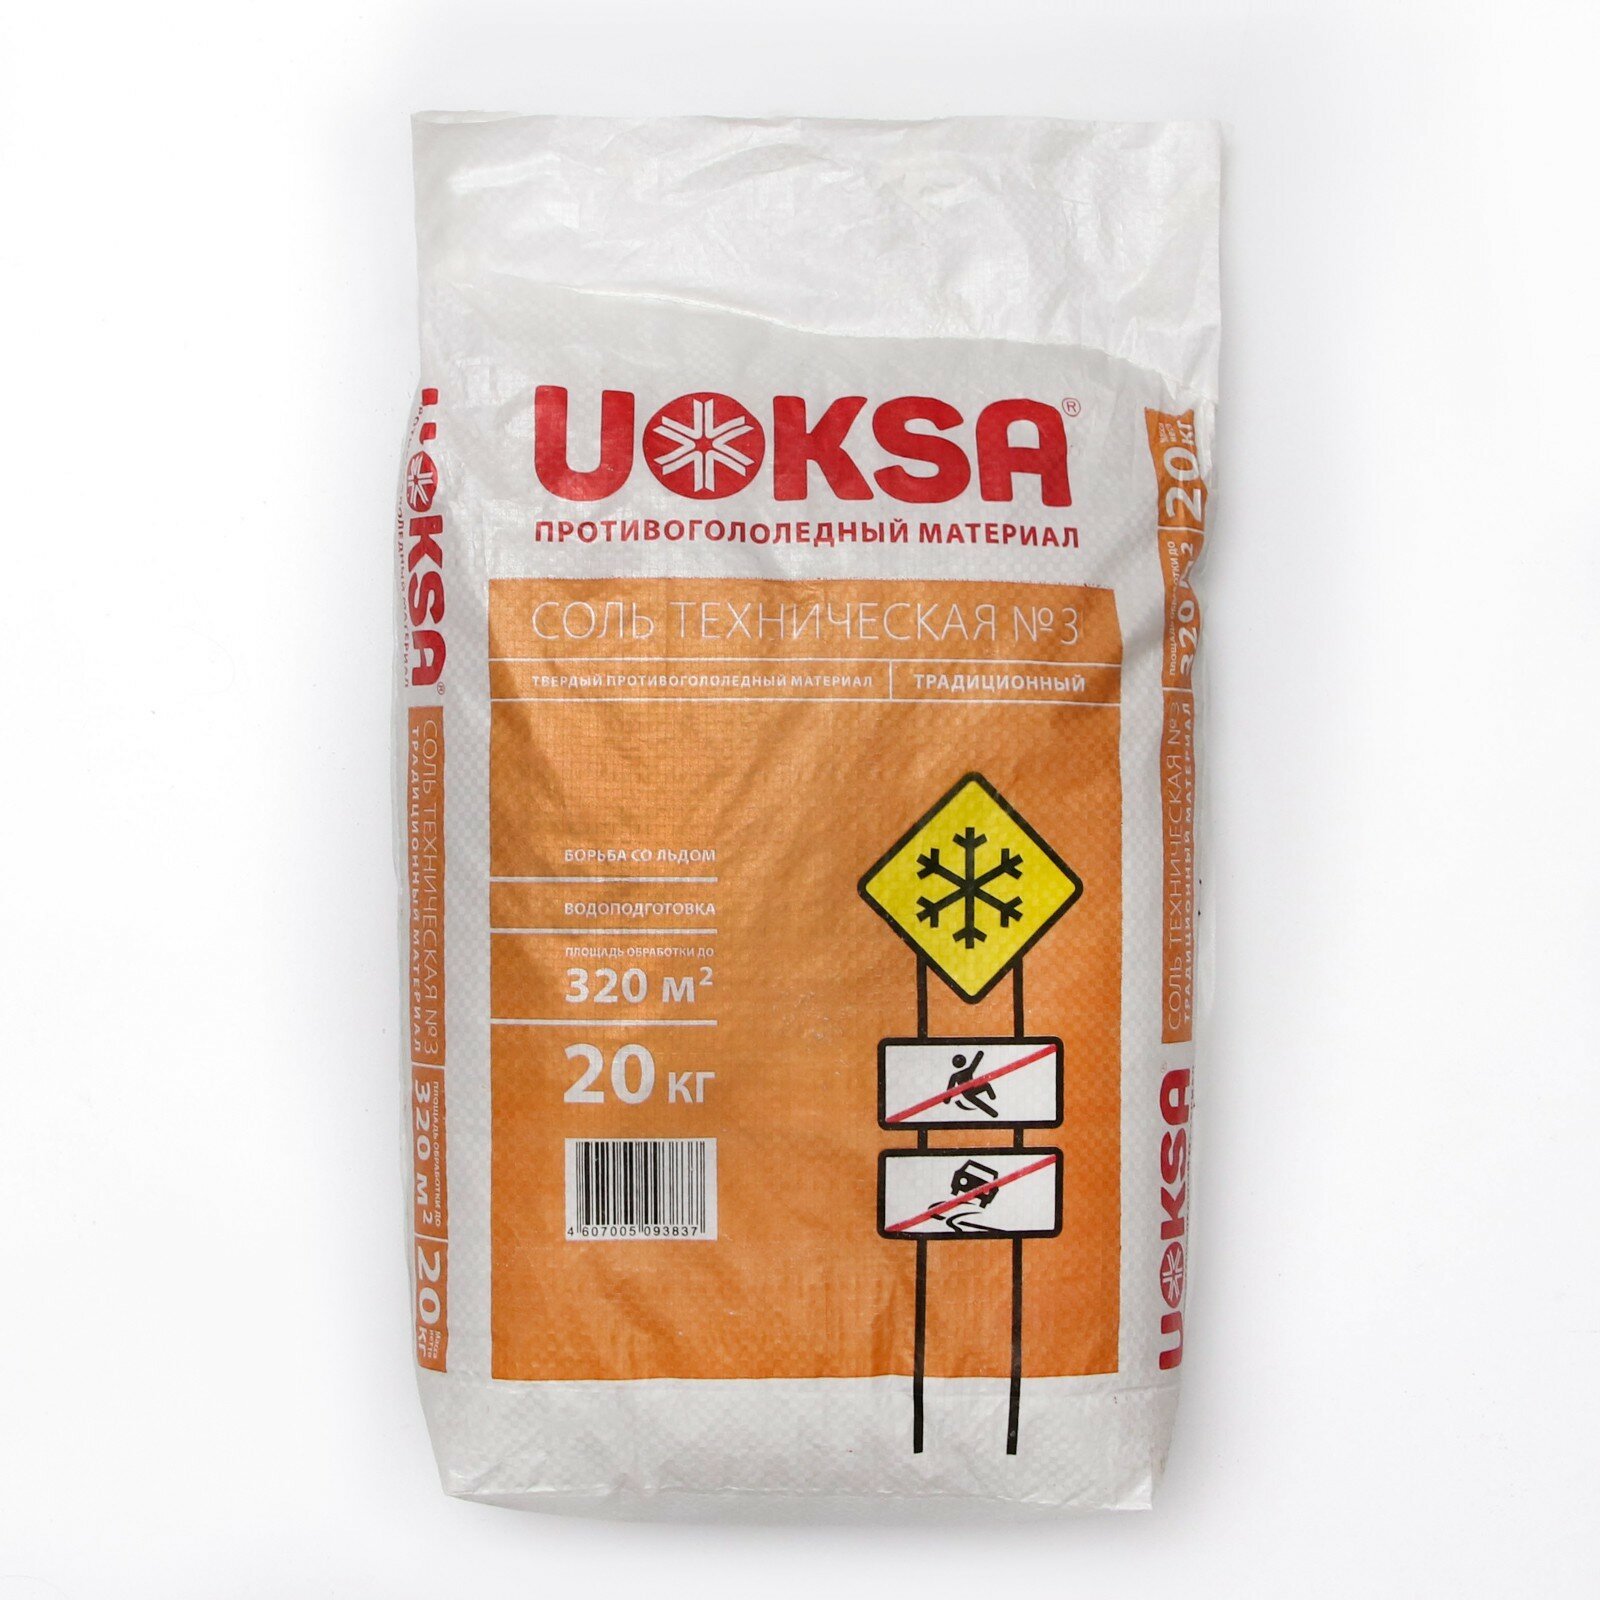 Реагент противогололёдный 20 кг UOKSA соль техническая №3, мешок /Квант продажи 1 ед./